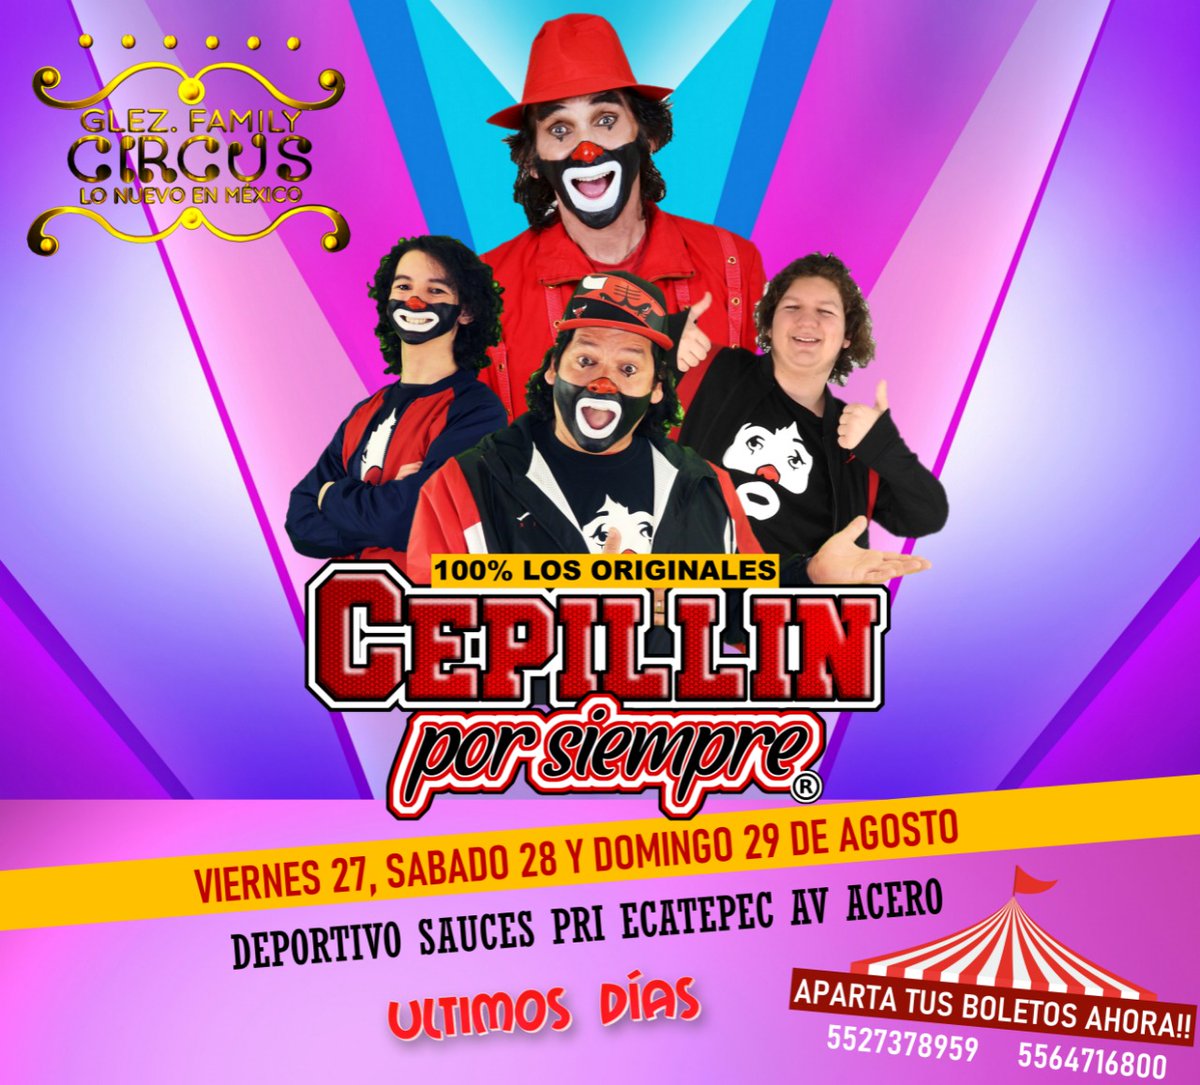 @cepillintv #CepillinPorSiempre 
#Circo

¡REGRESAN!

Al Mejor Circo de México 
@GlezFamCircus

Viernes 27 19:30
Sábado y Domingo
18:30 y 20:30

Informes
55 2737 8959 
55 6471 6800